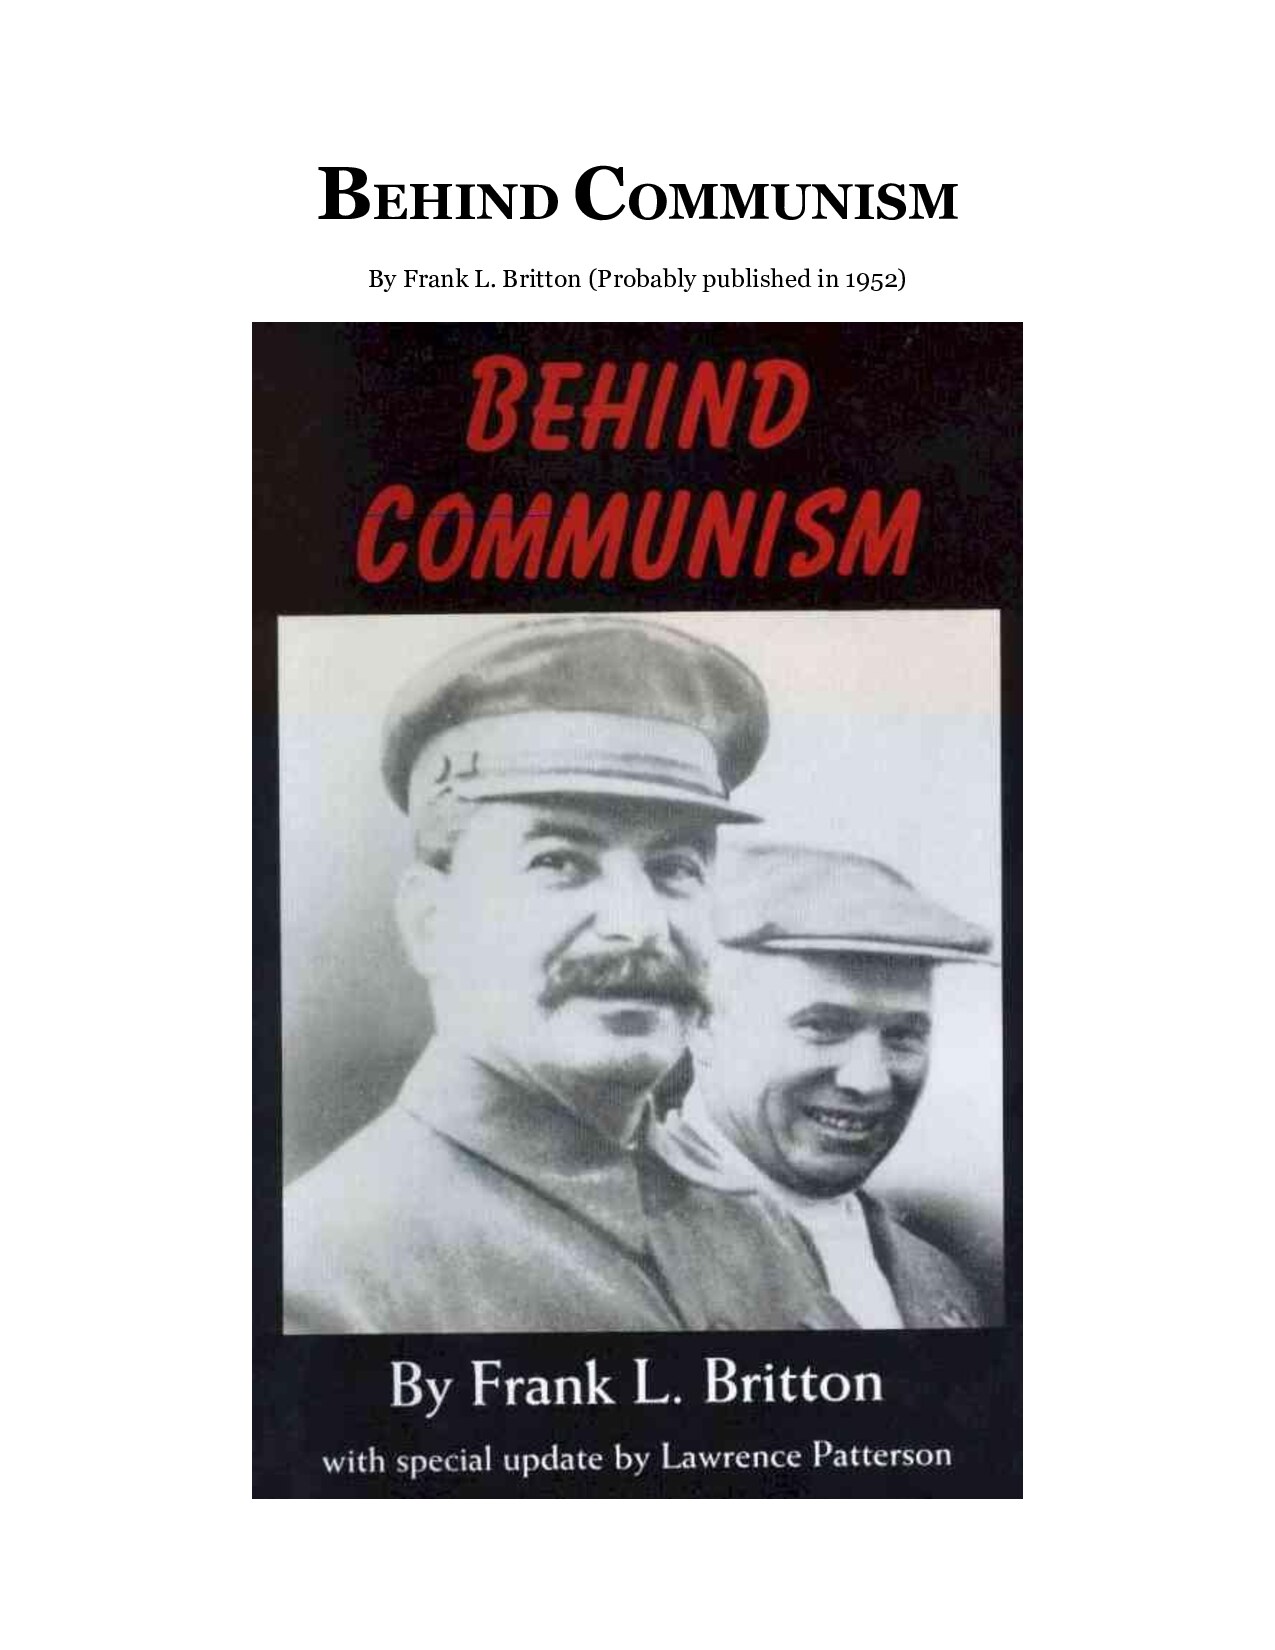 Britton, Frank; Behind Communism